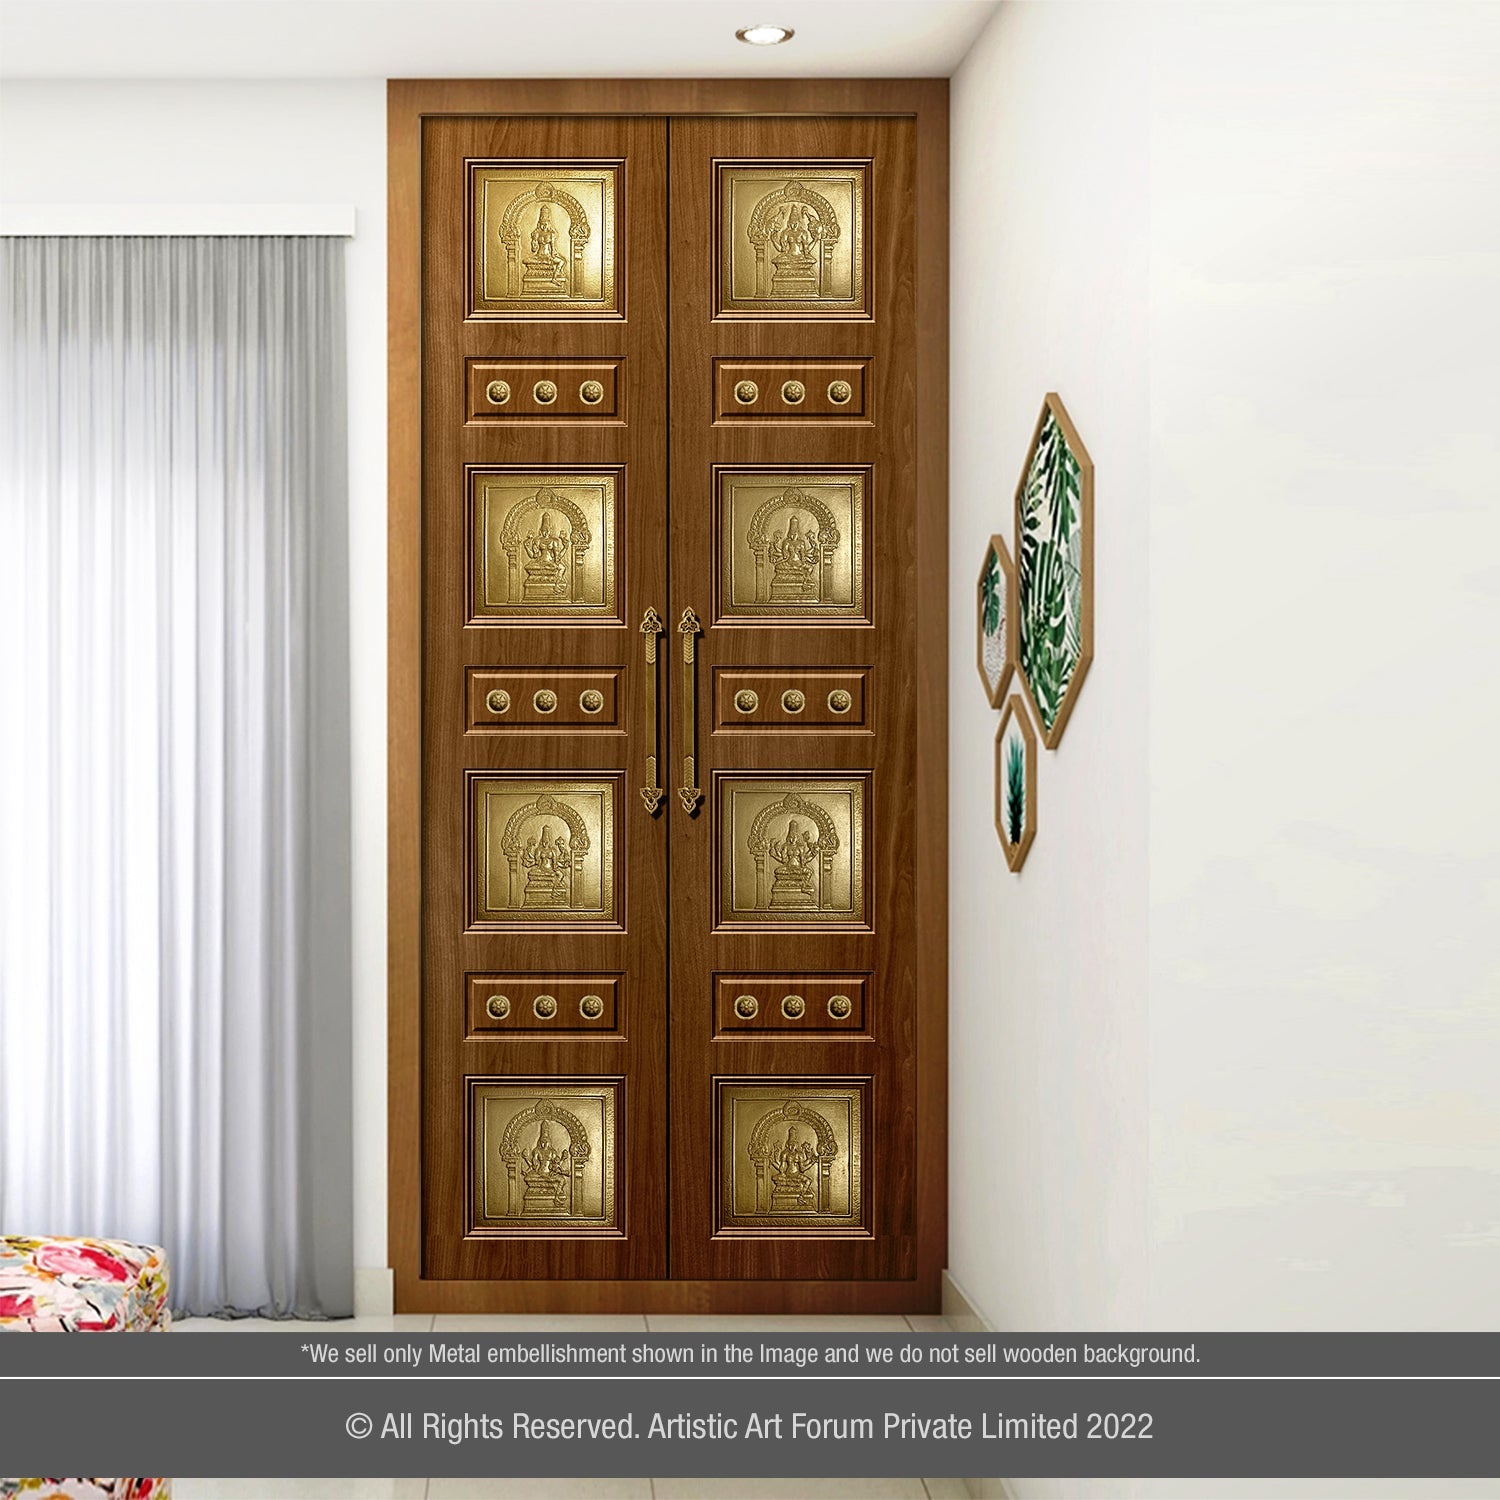 Astalakshmi Pooja Door Accessories | For Pooja Room Design